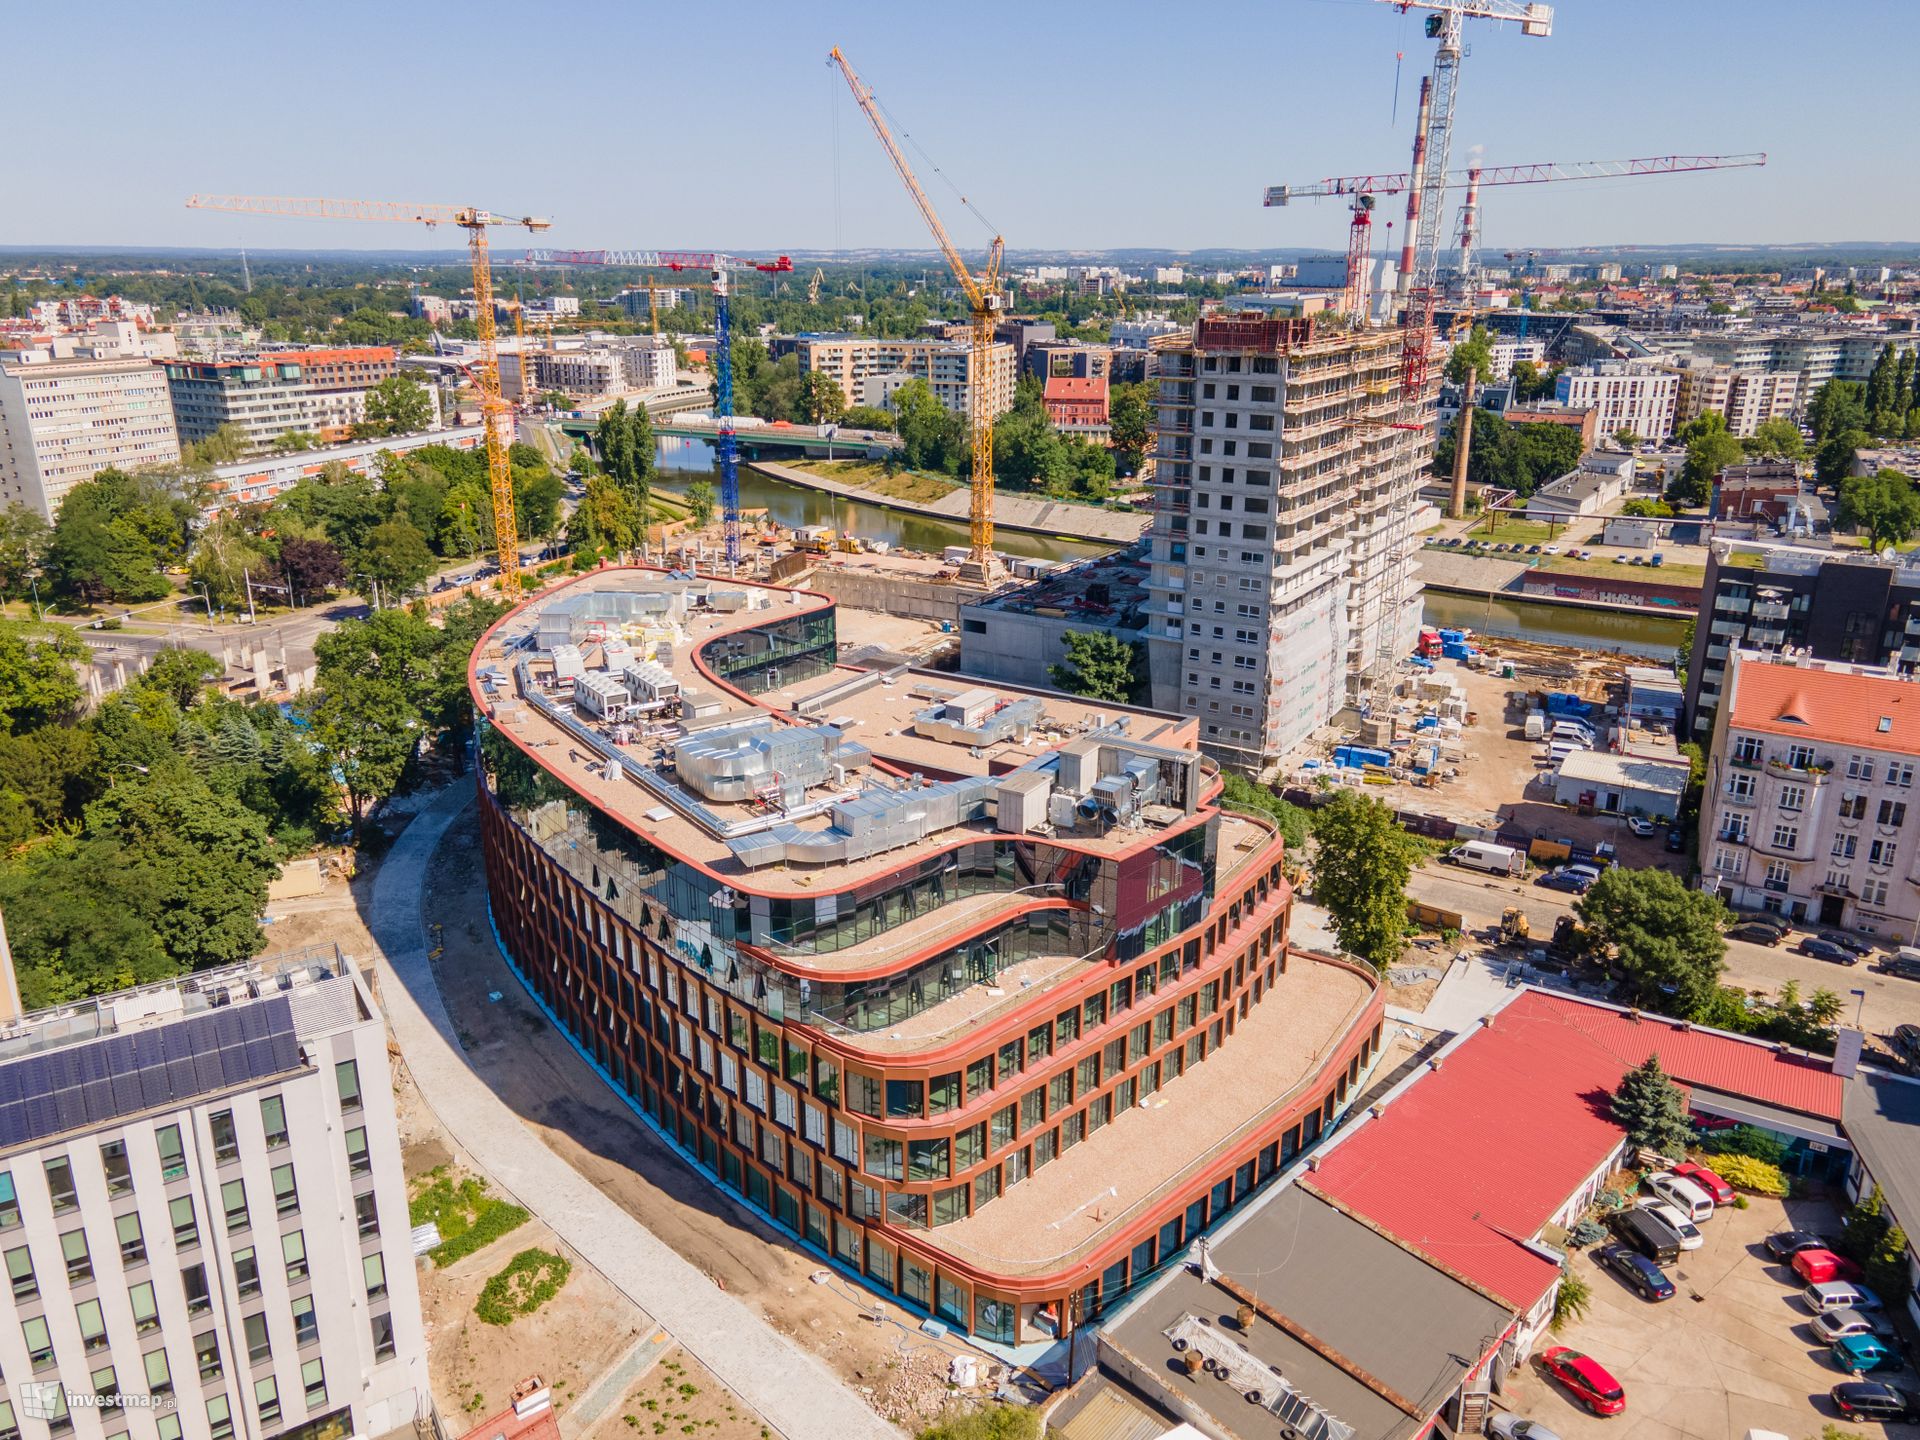 W centrum Wrocławia powstaje kompleks wielofunkcyjny Quorum ze 140-metrowym wieżowcem 